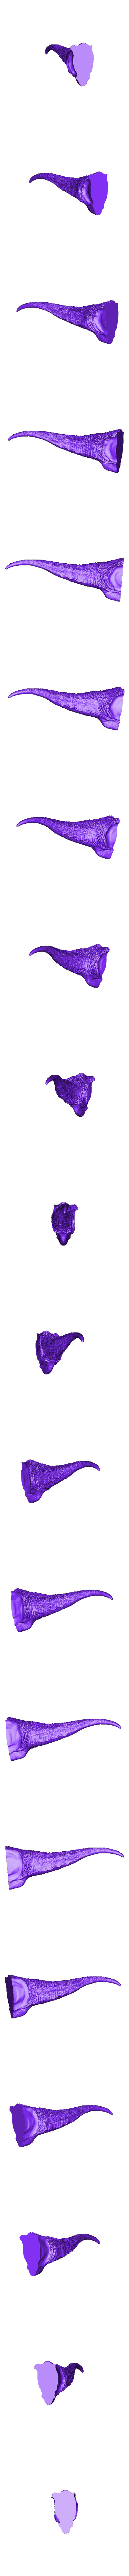 Tail.stl Download free STL file Alioramus dinosaurus • 3D printable model, duncanshadow